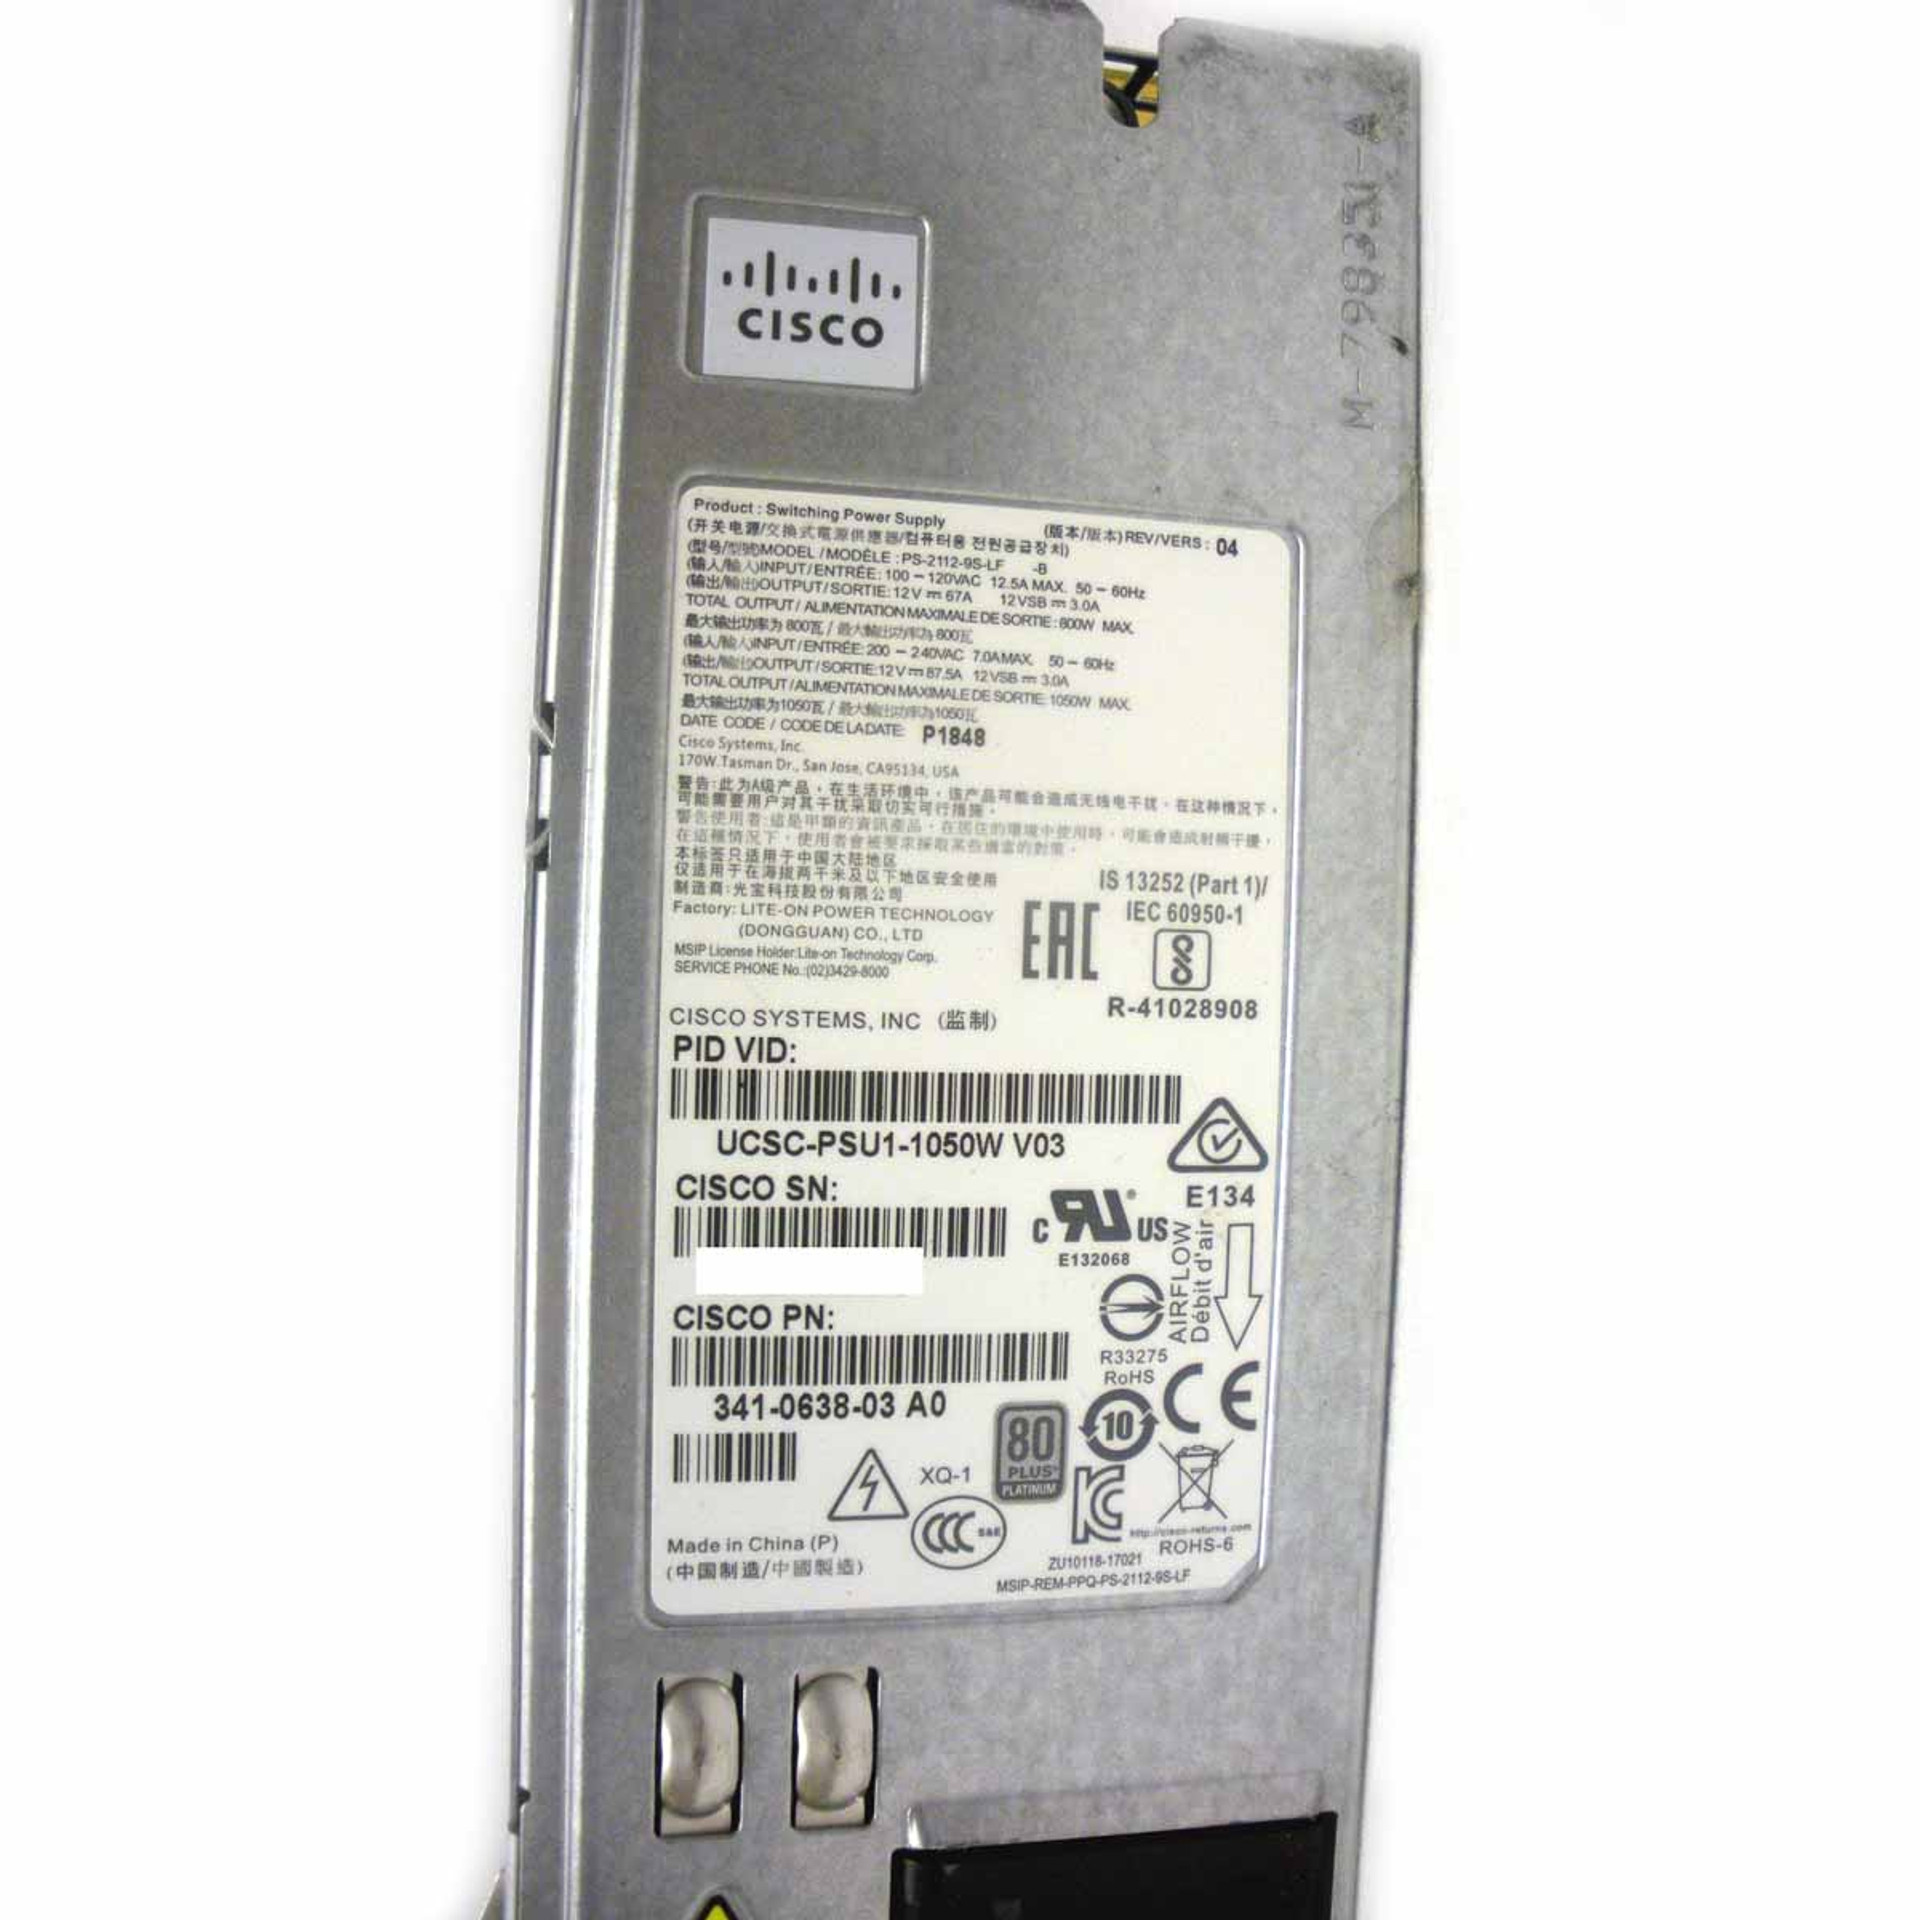 Cisco UCSC-PSU1-1050W Power Supply Unit 1050w AC